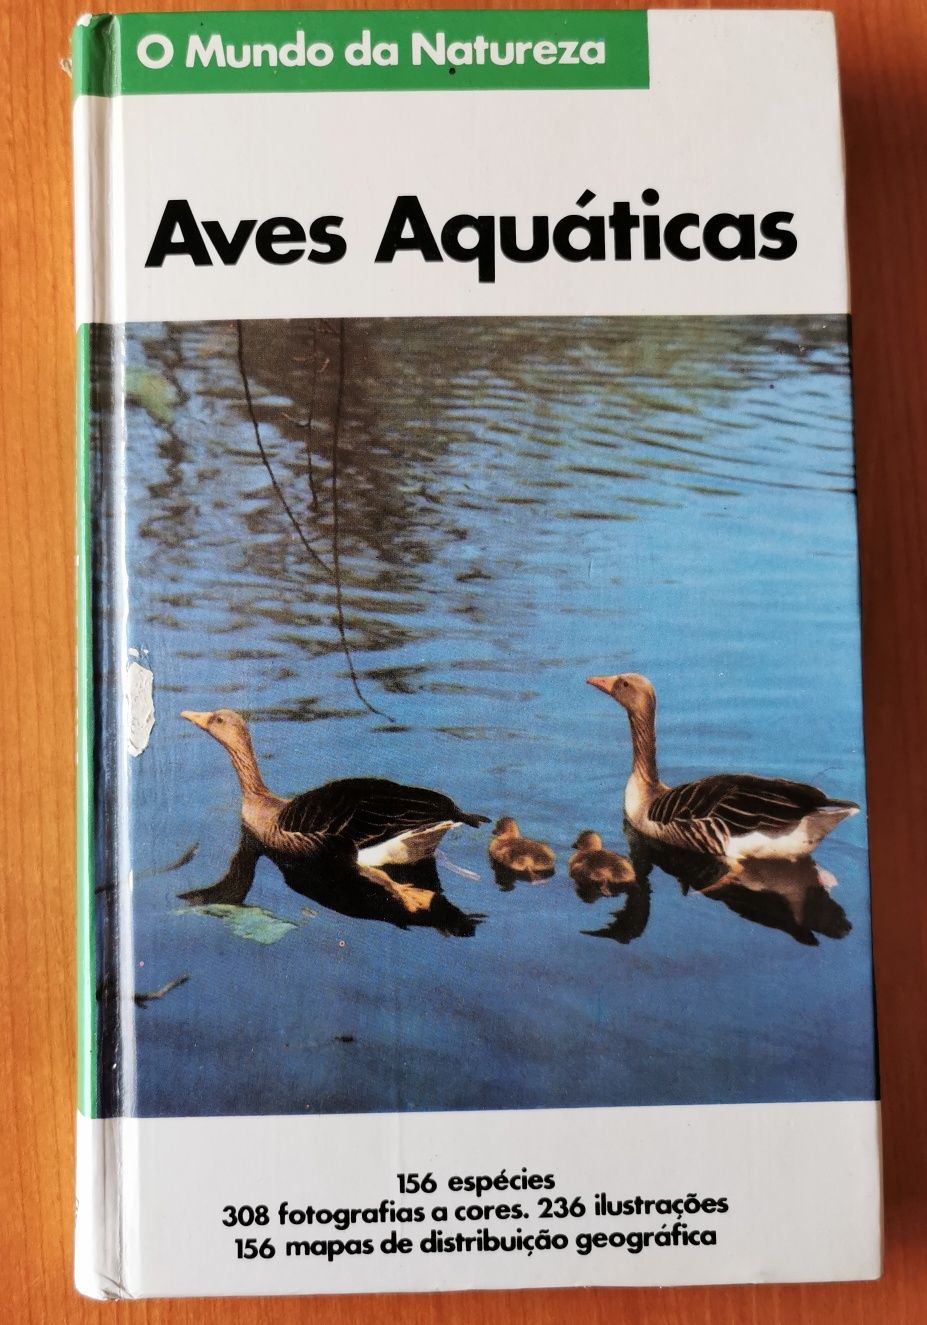 Livro "Aves Aquáticas"